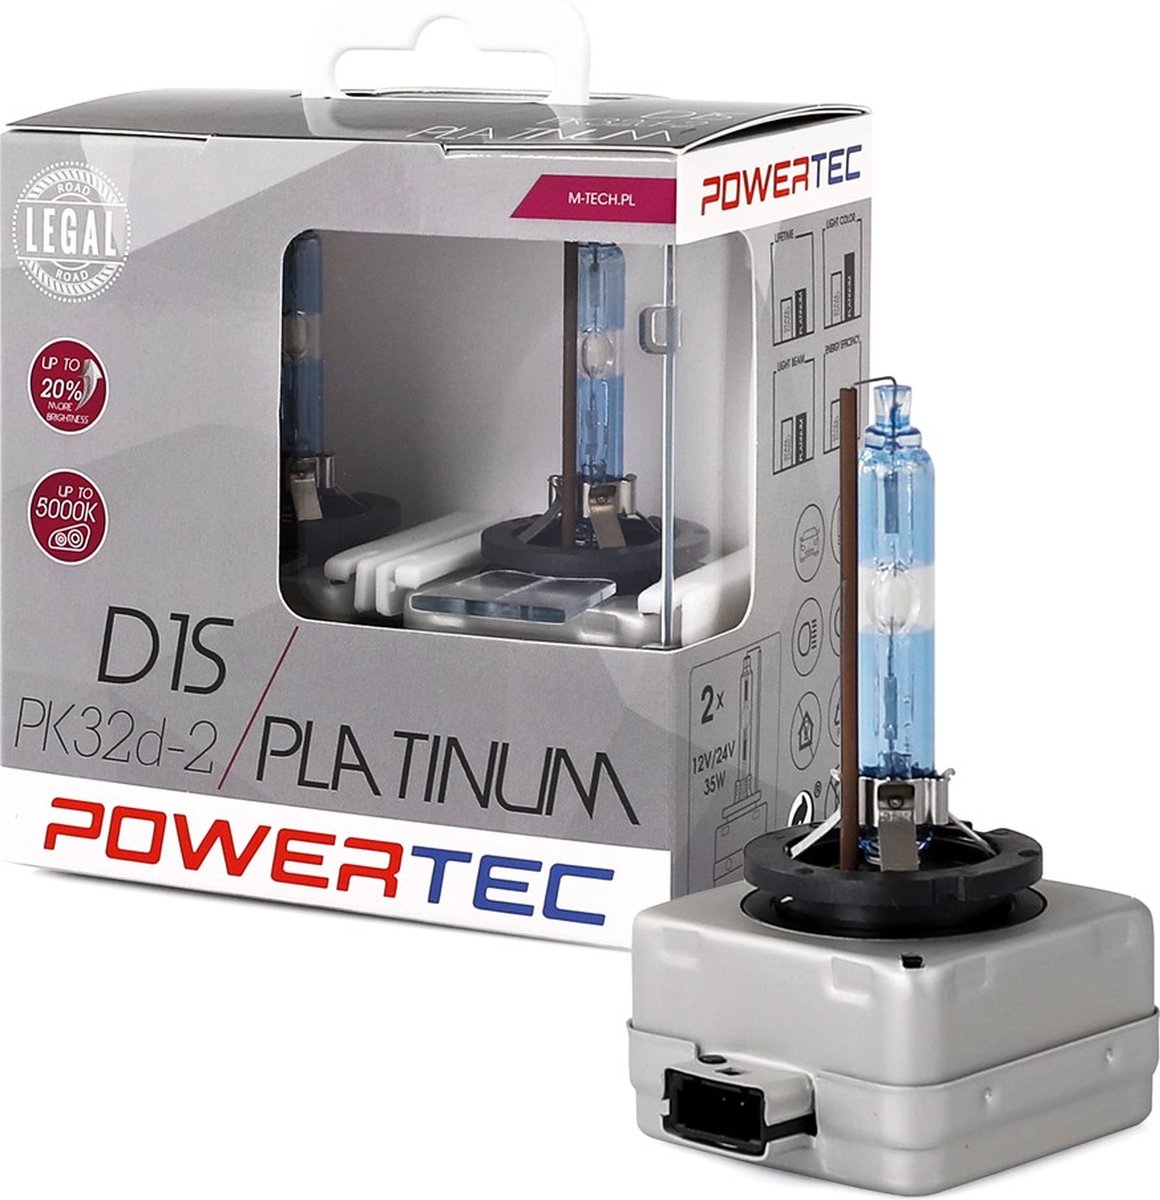 Powertec D1S Platinum - Set